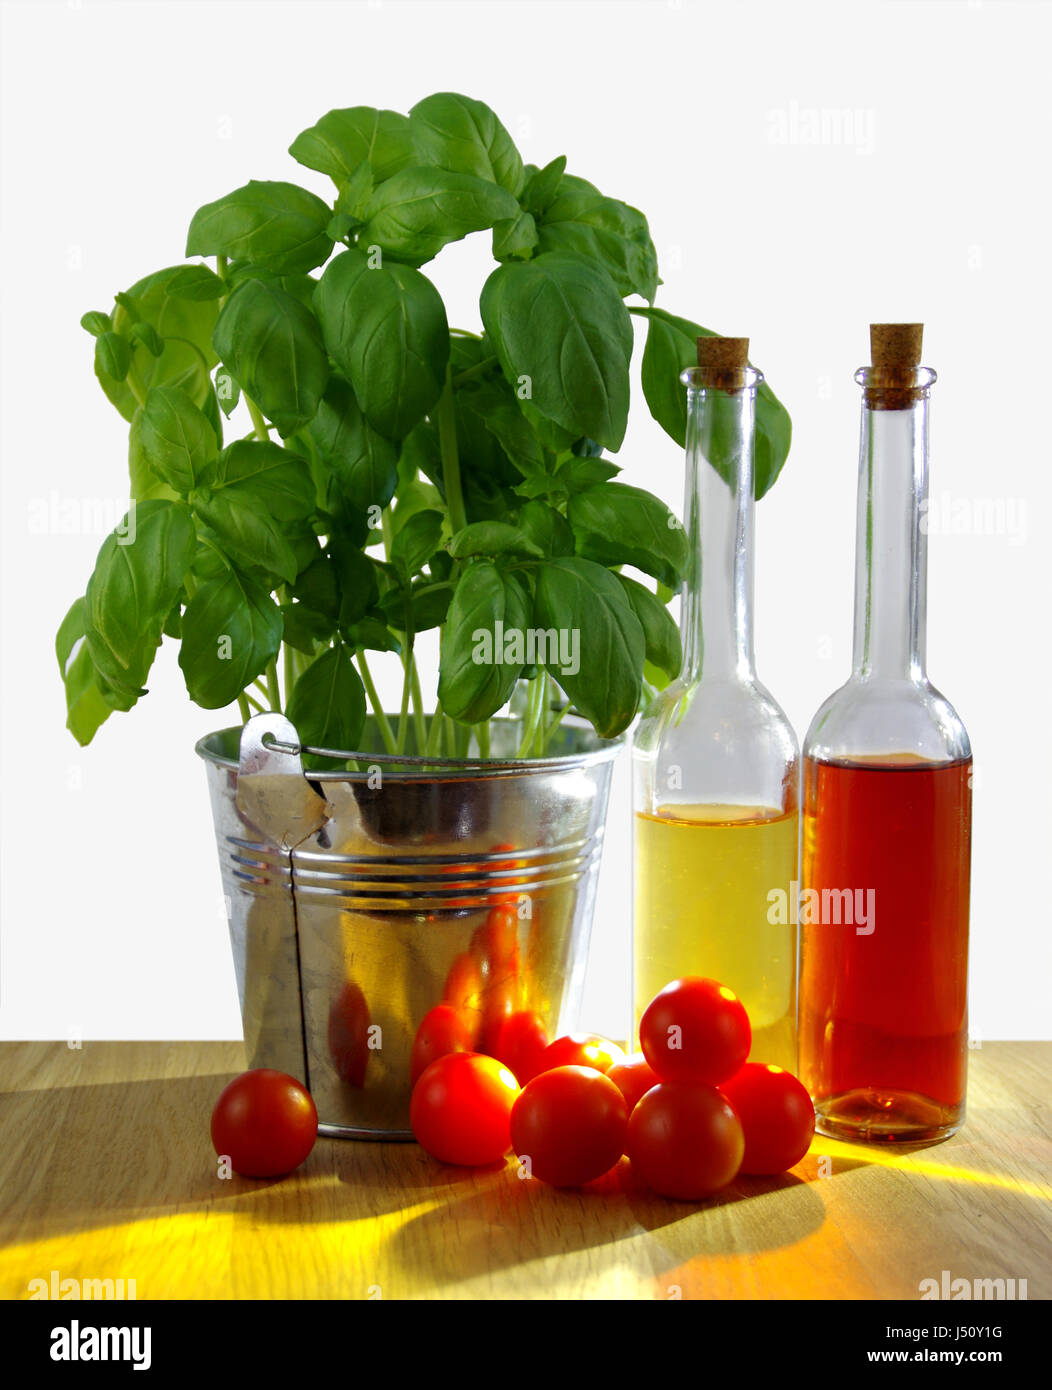 Schichtbildung Basilikum in Blecheimer mit frischen Tomaten und Olivenöl Flasche am Tisch, sonnigen Hintergrundbeleuchtung Stockfoto